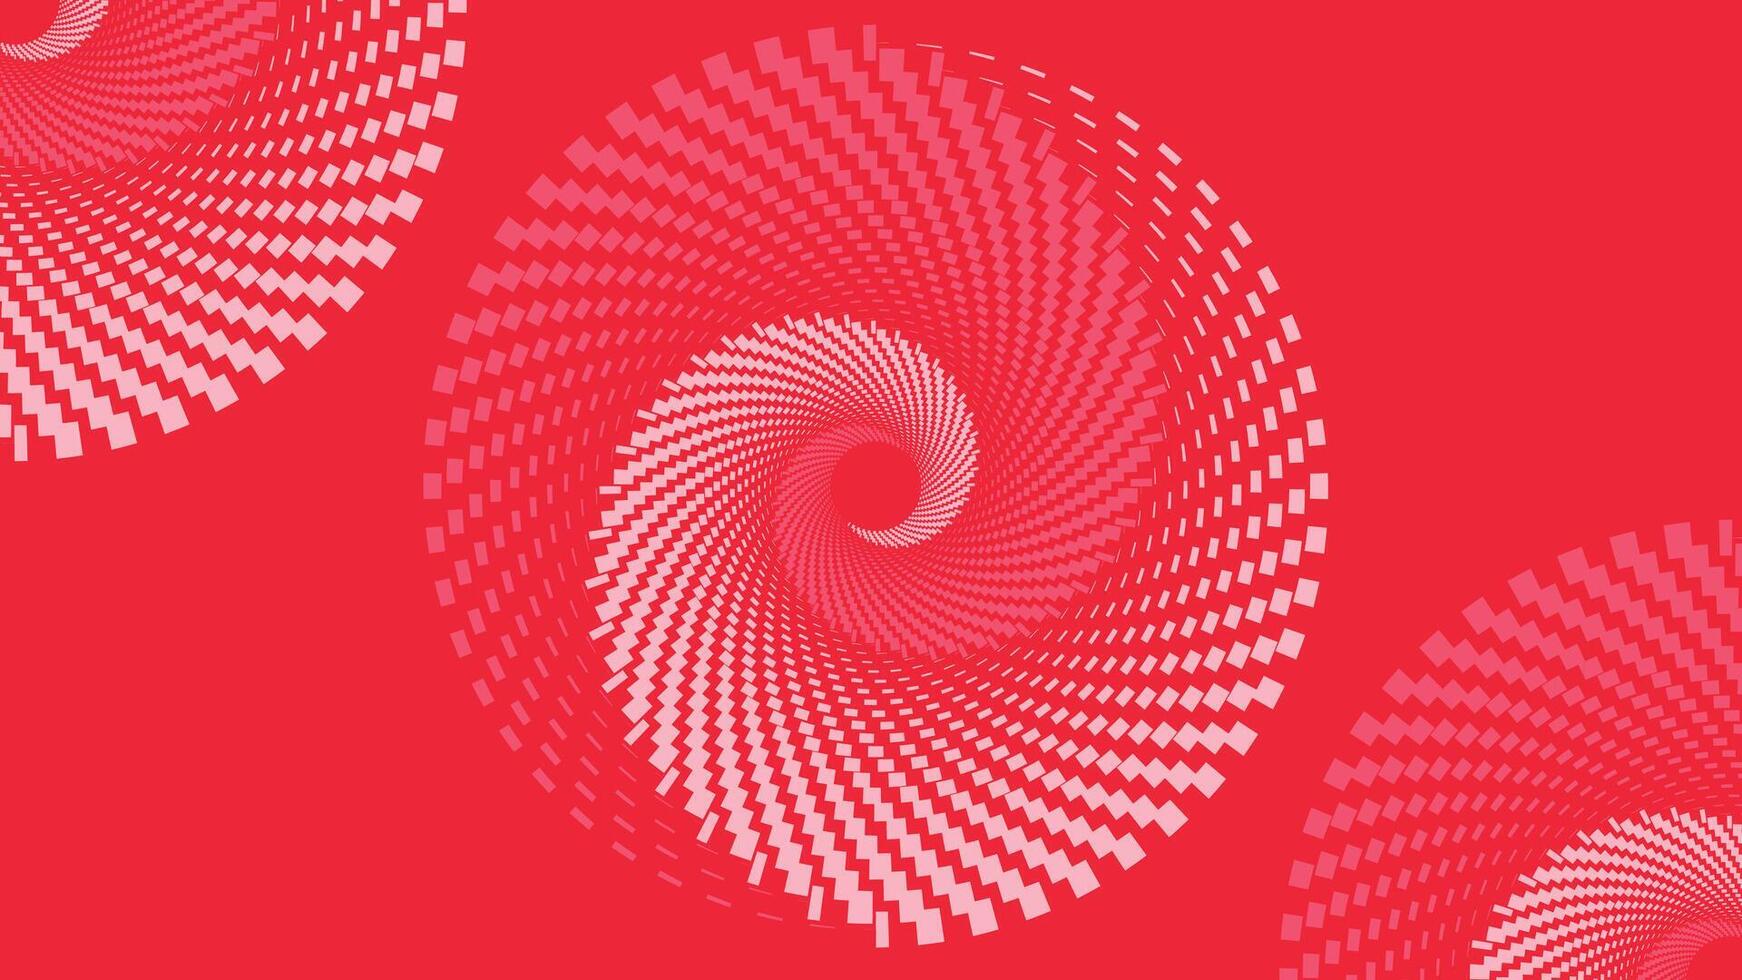 abstrakt Spiral- gepunktet Wirbel Stil Dringlichkeit rot Rosa Farbe Hintergrund. vektor